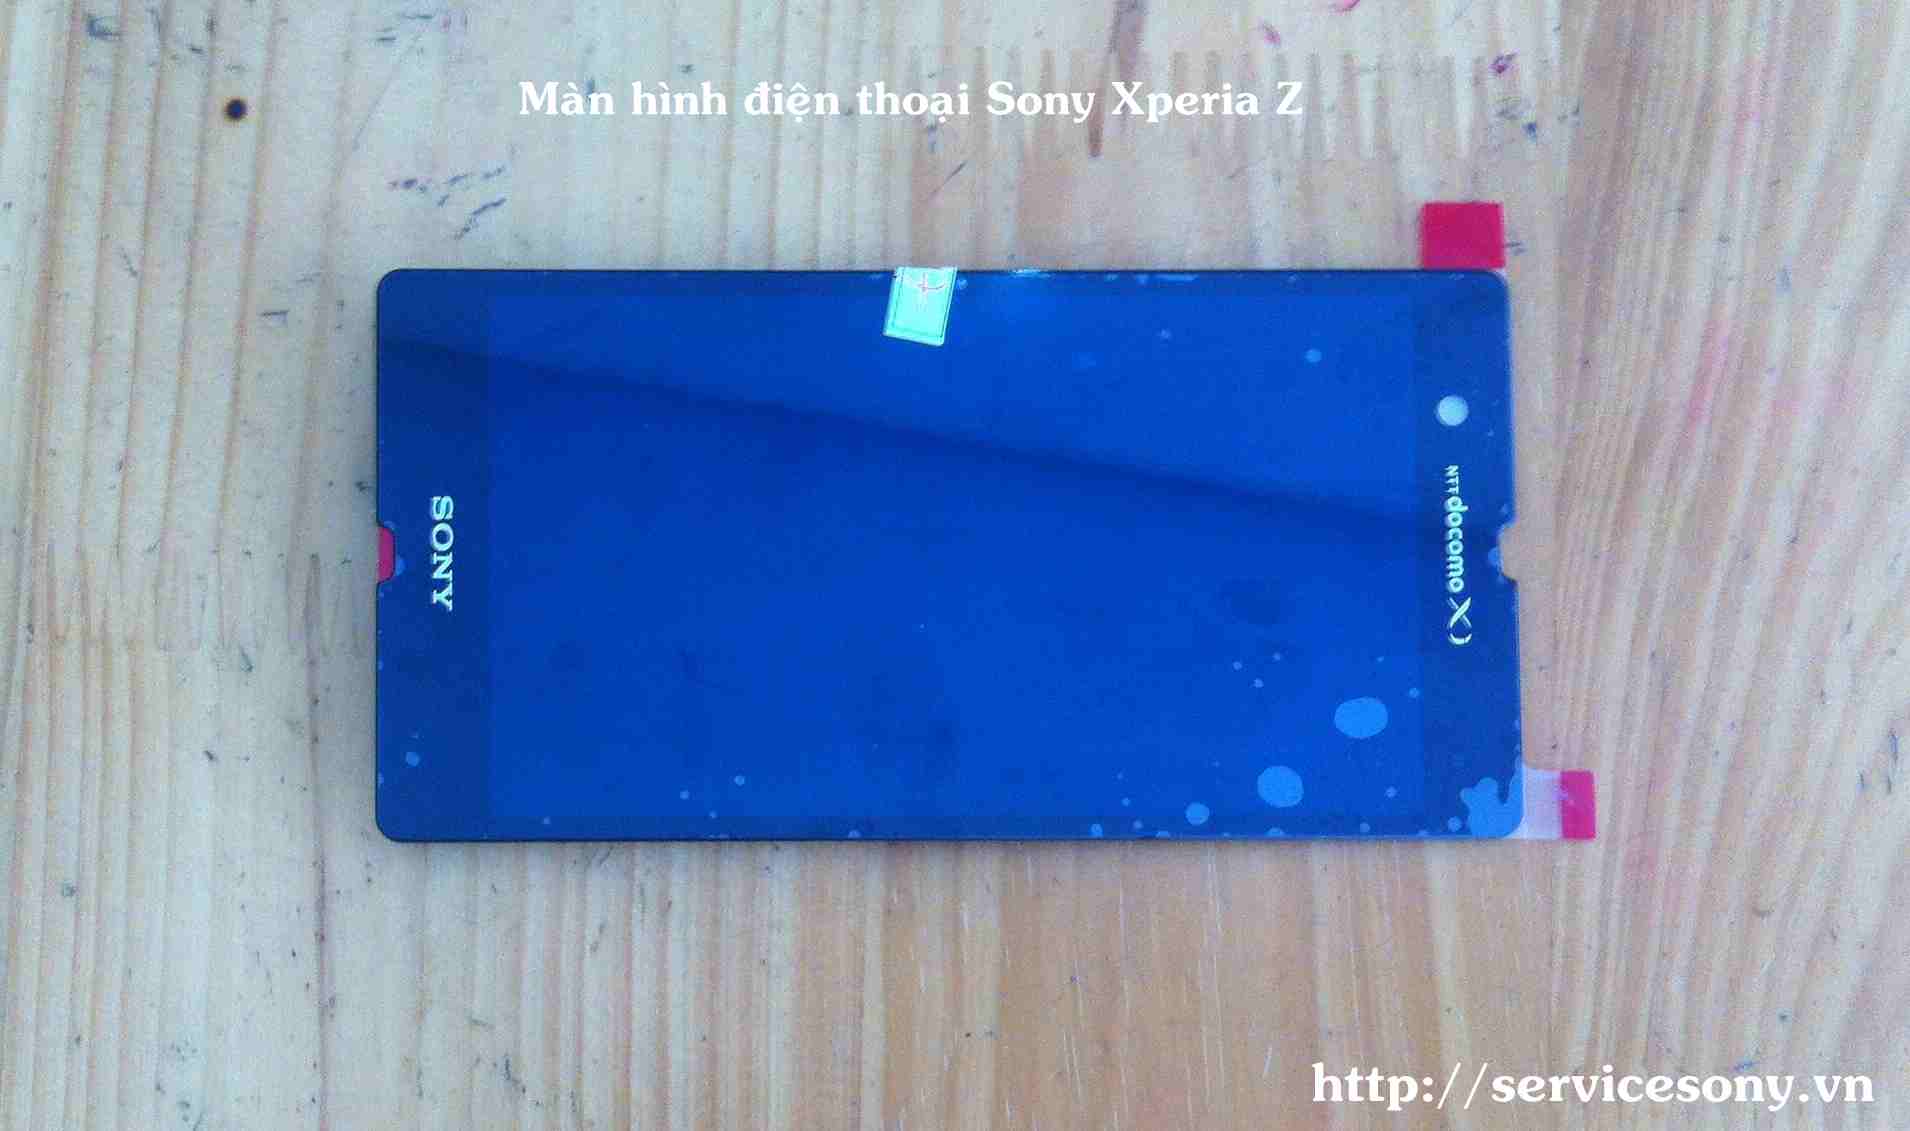 Màn hình điện thoại Sony Xperia Z